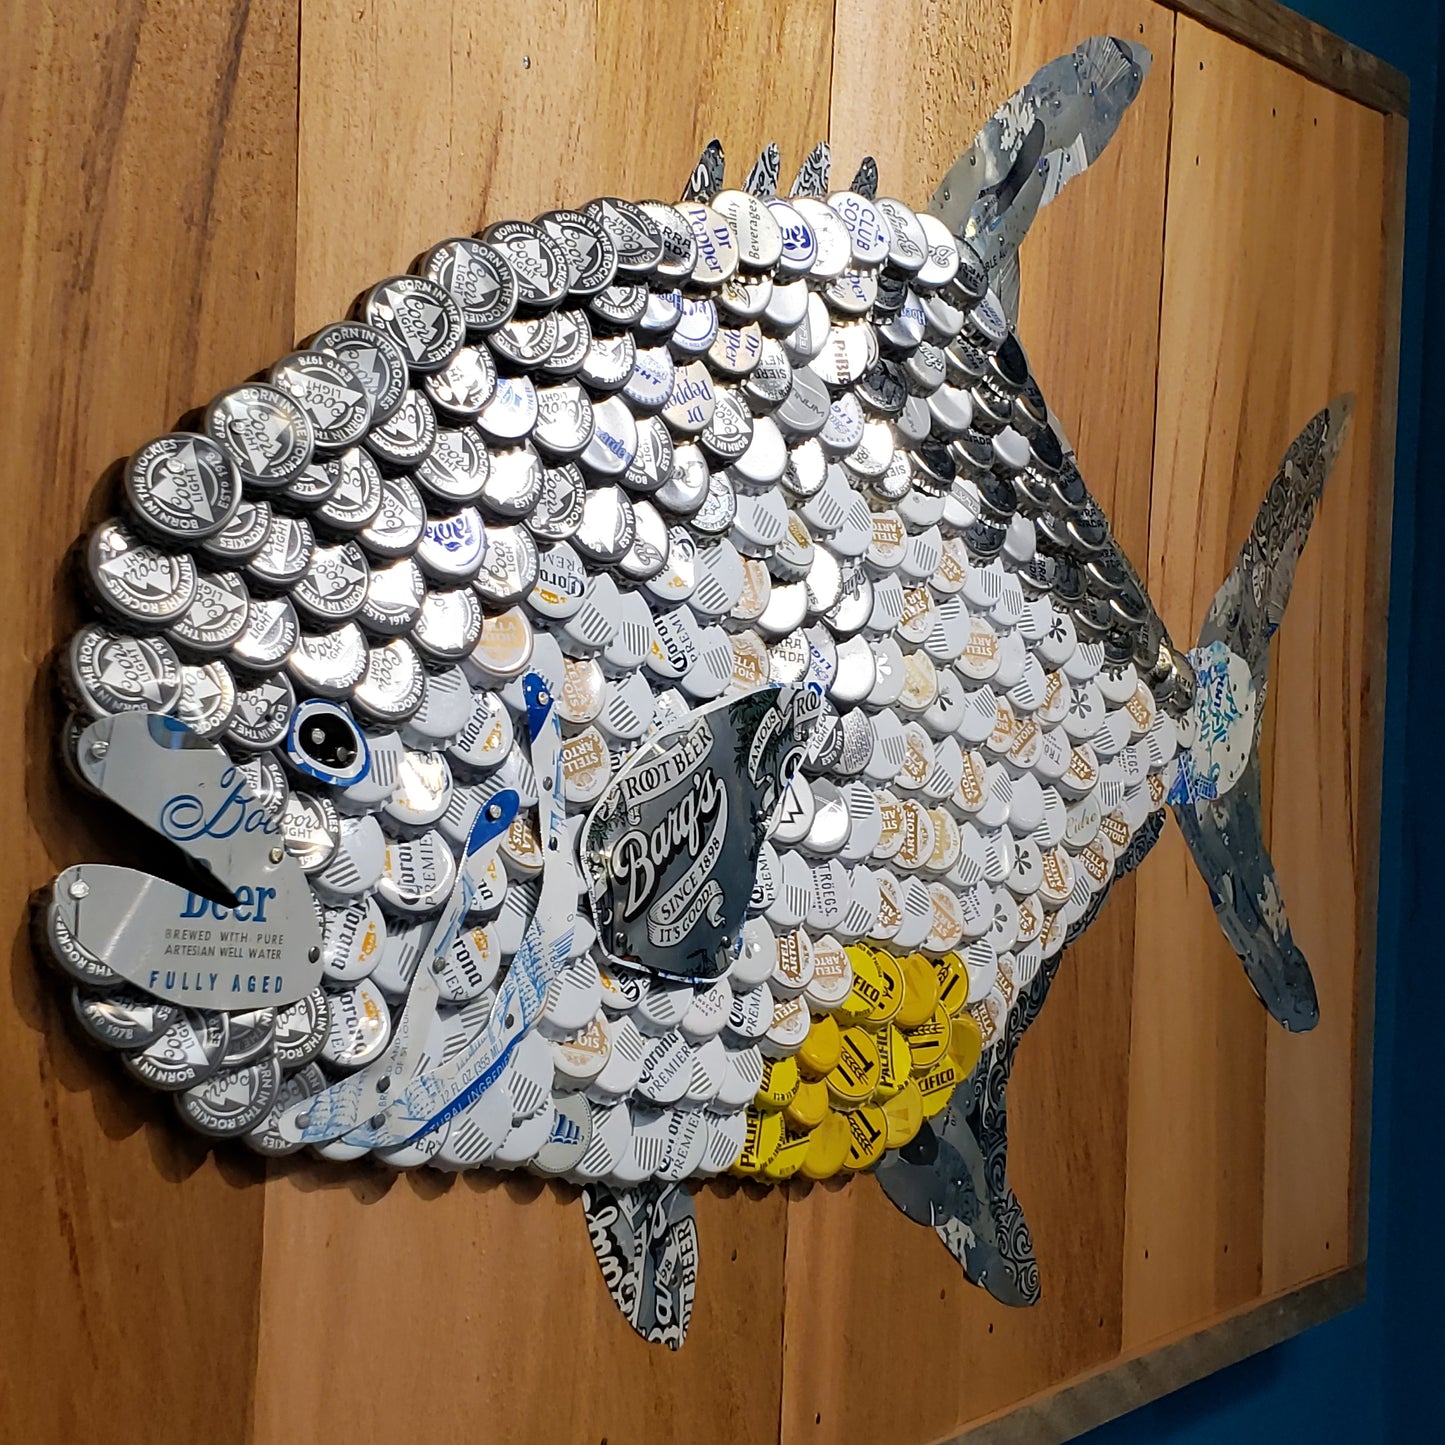 Folk Art Fish-Permit